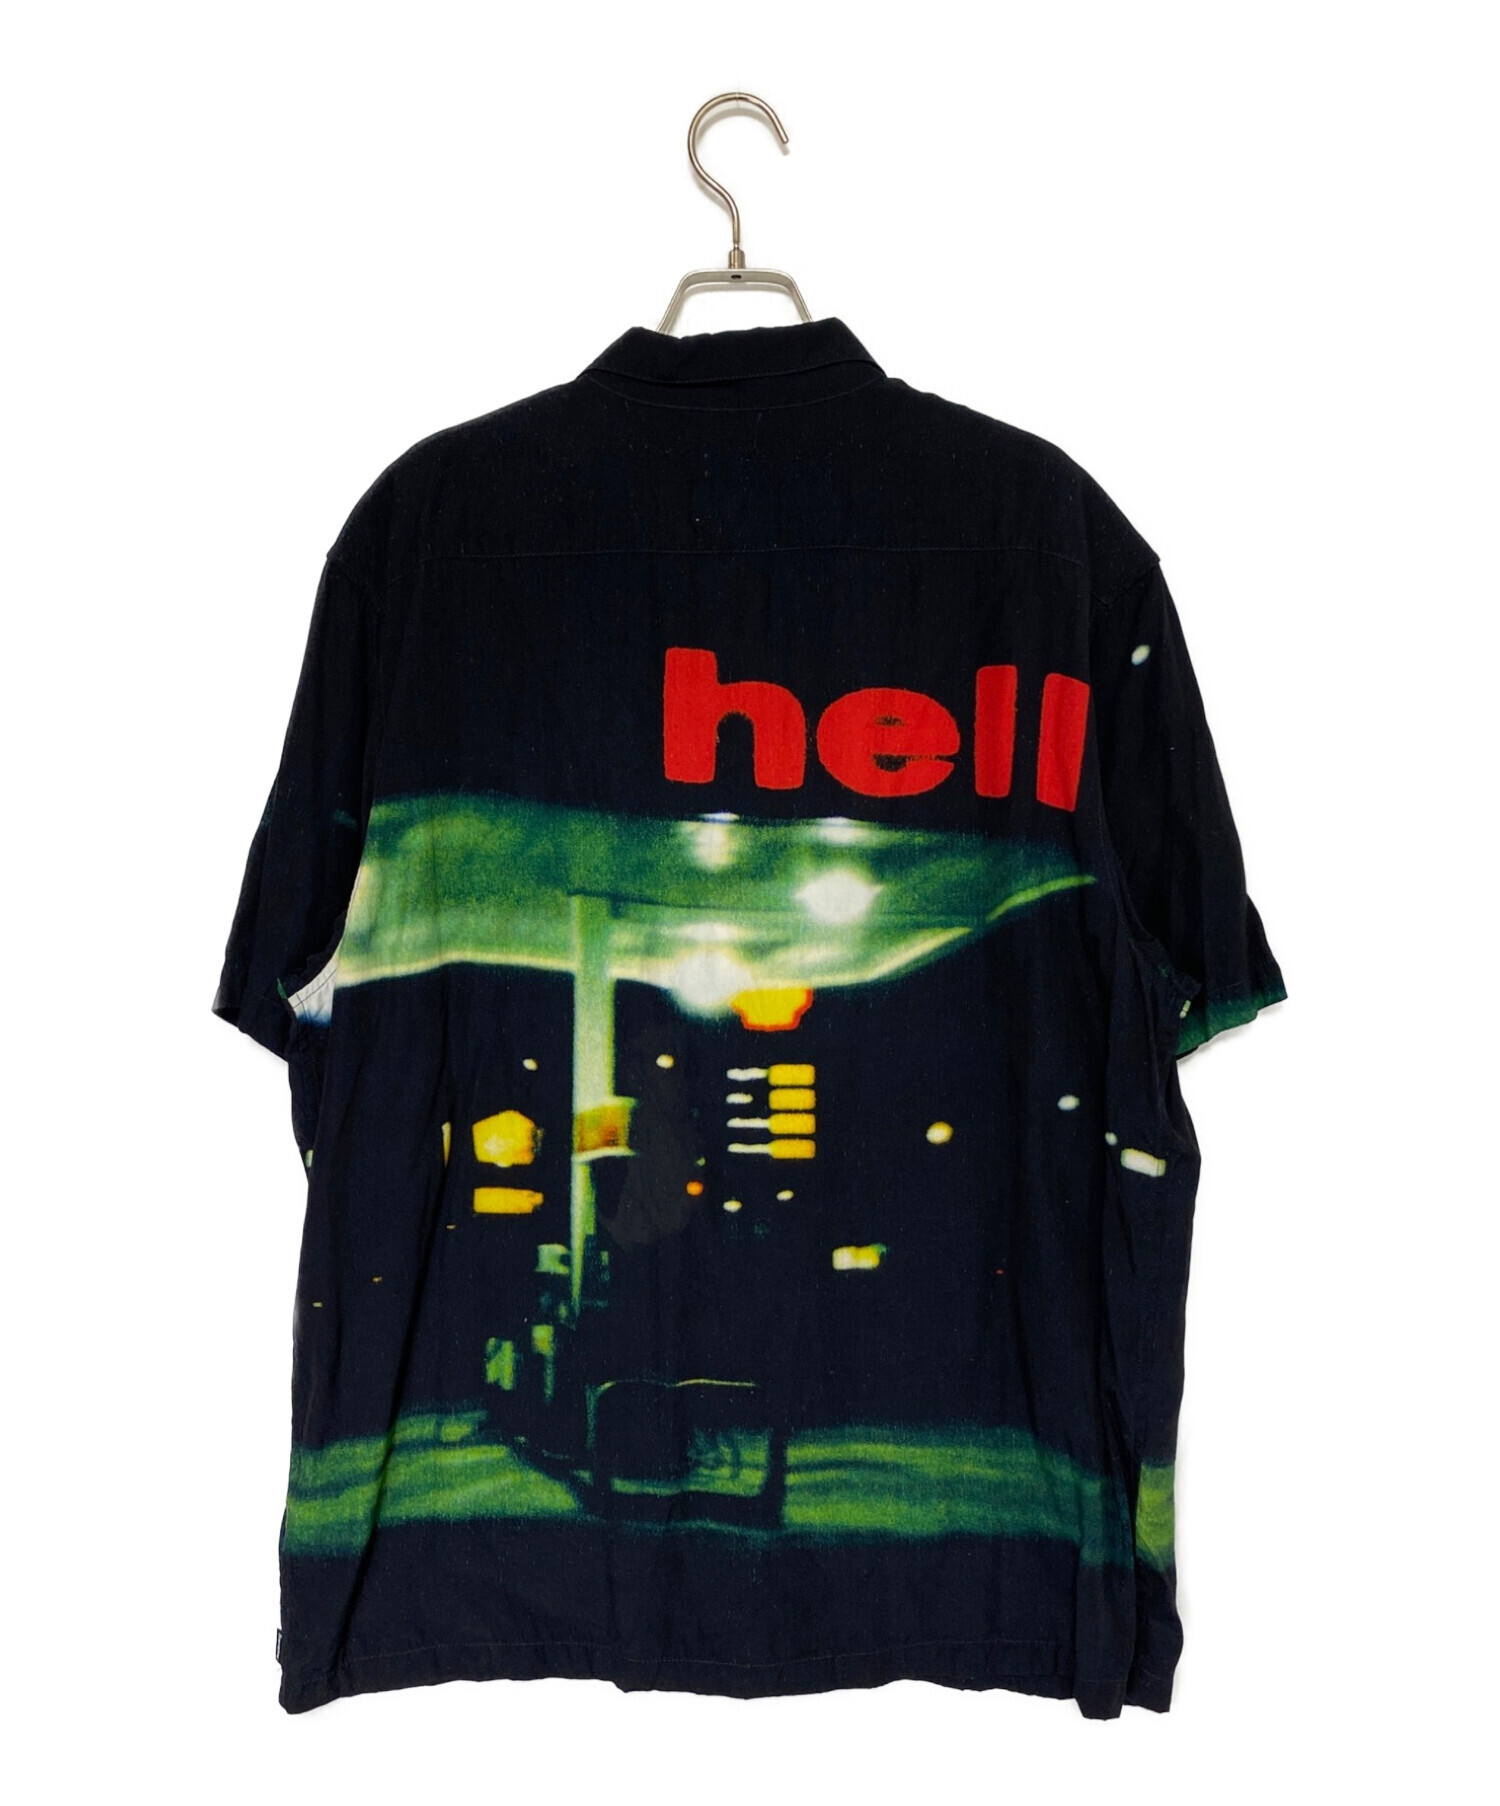 新品未使用品Supreme Hell S/S Shirt シャツ